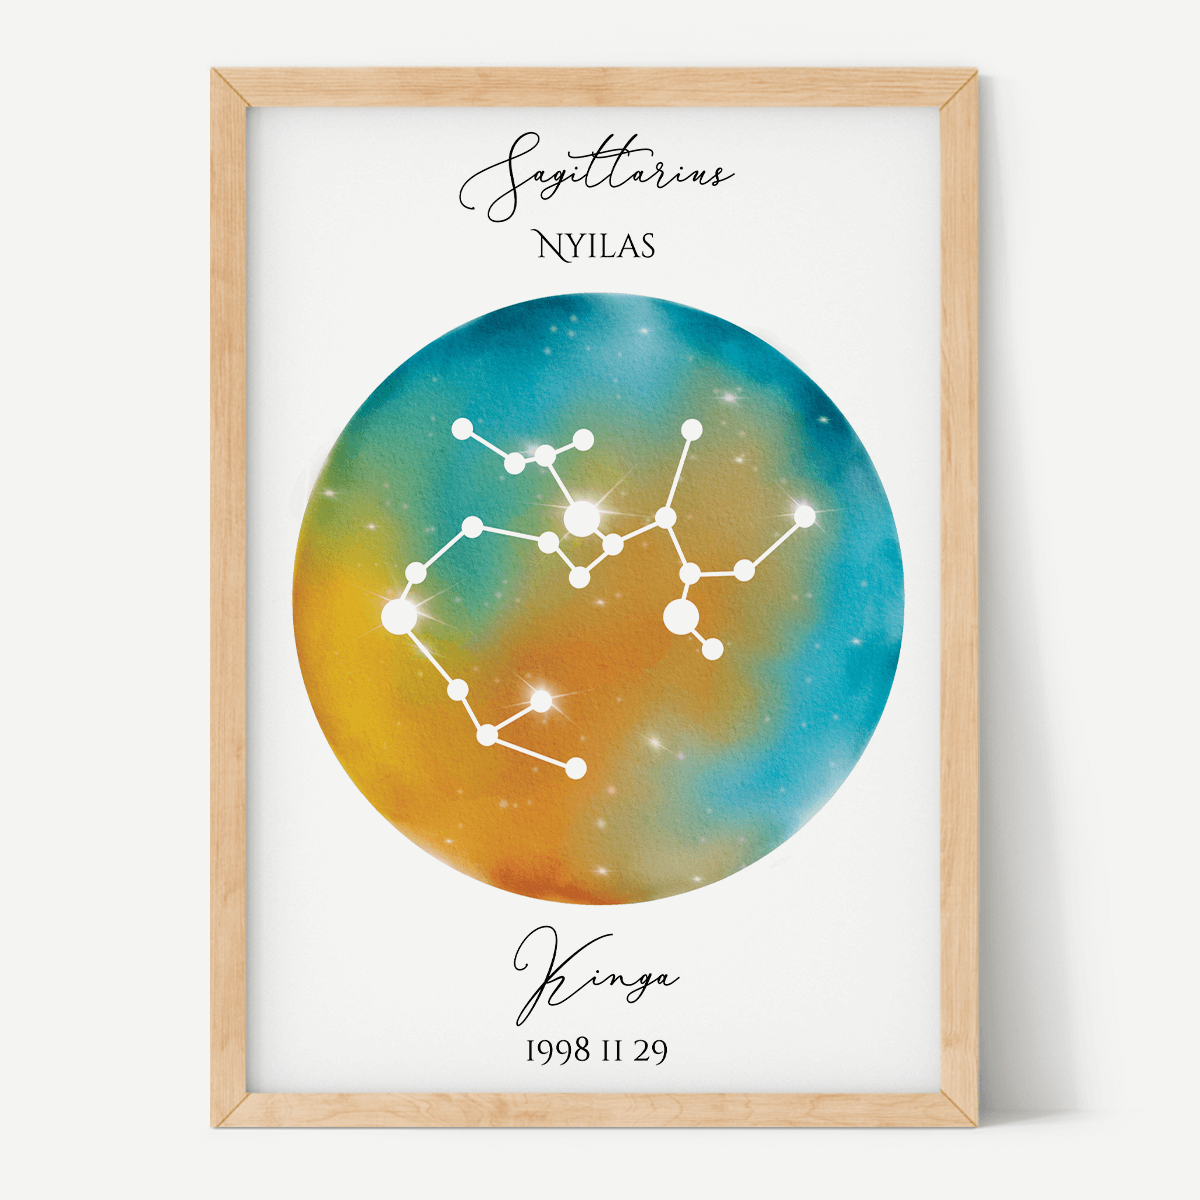 Türkiz-Narancs Égbolt - Személyre szabott csillagjegyes poszter - Választható csillagjegy